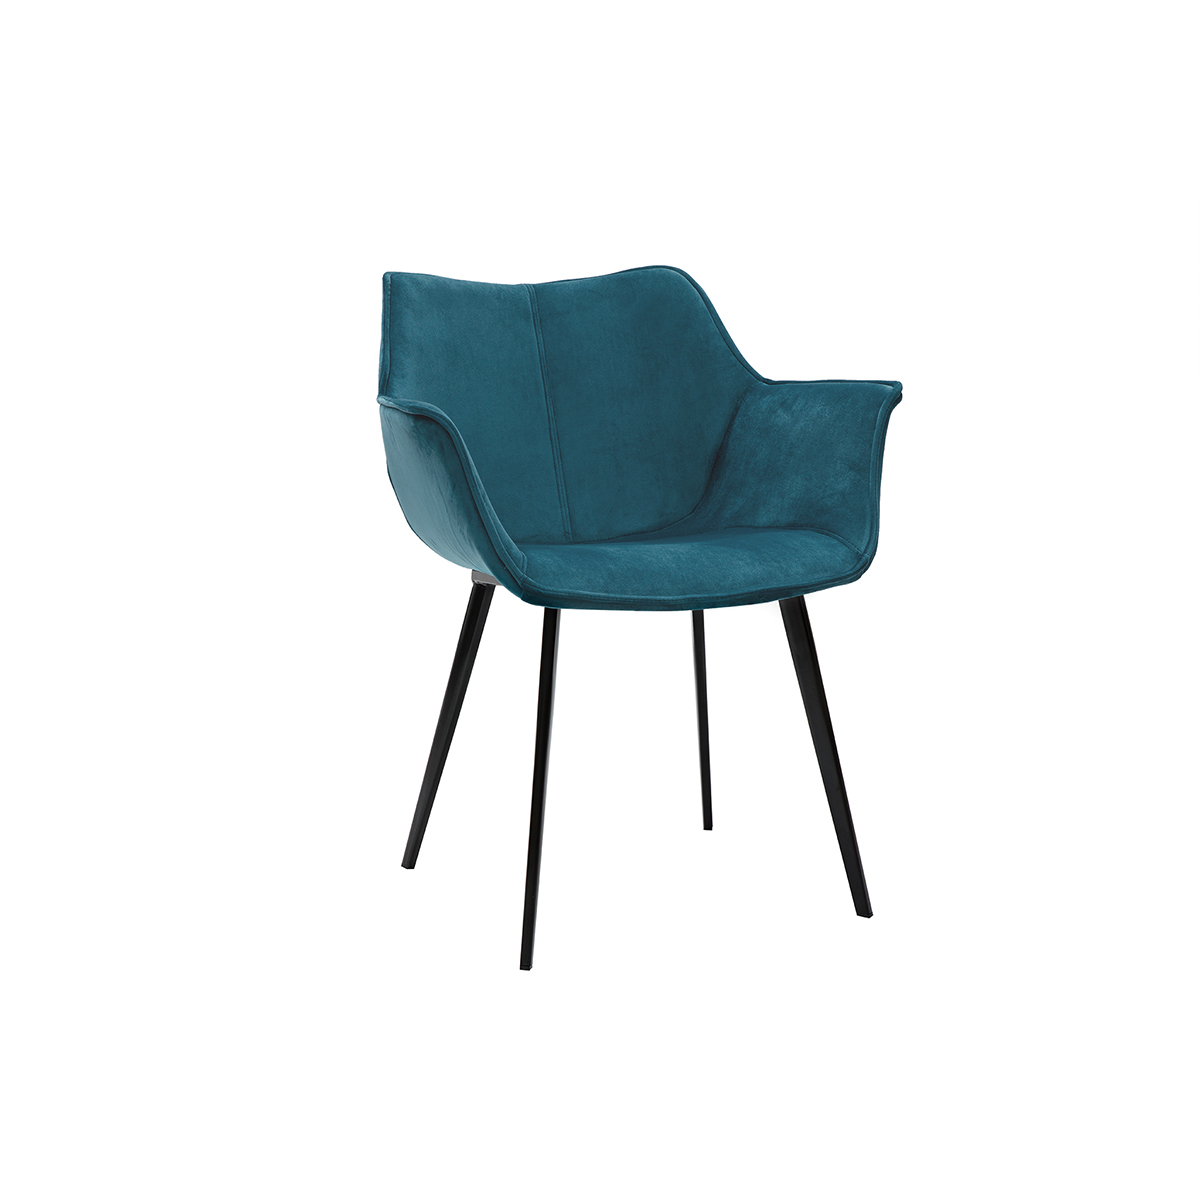 Chaise design en tissu velours bleu pétrole et métal noir VOLO vue1